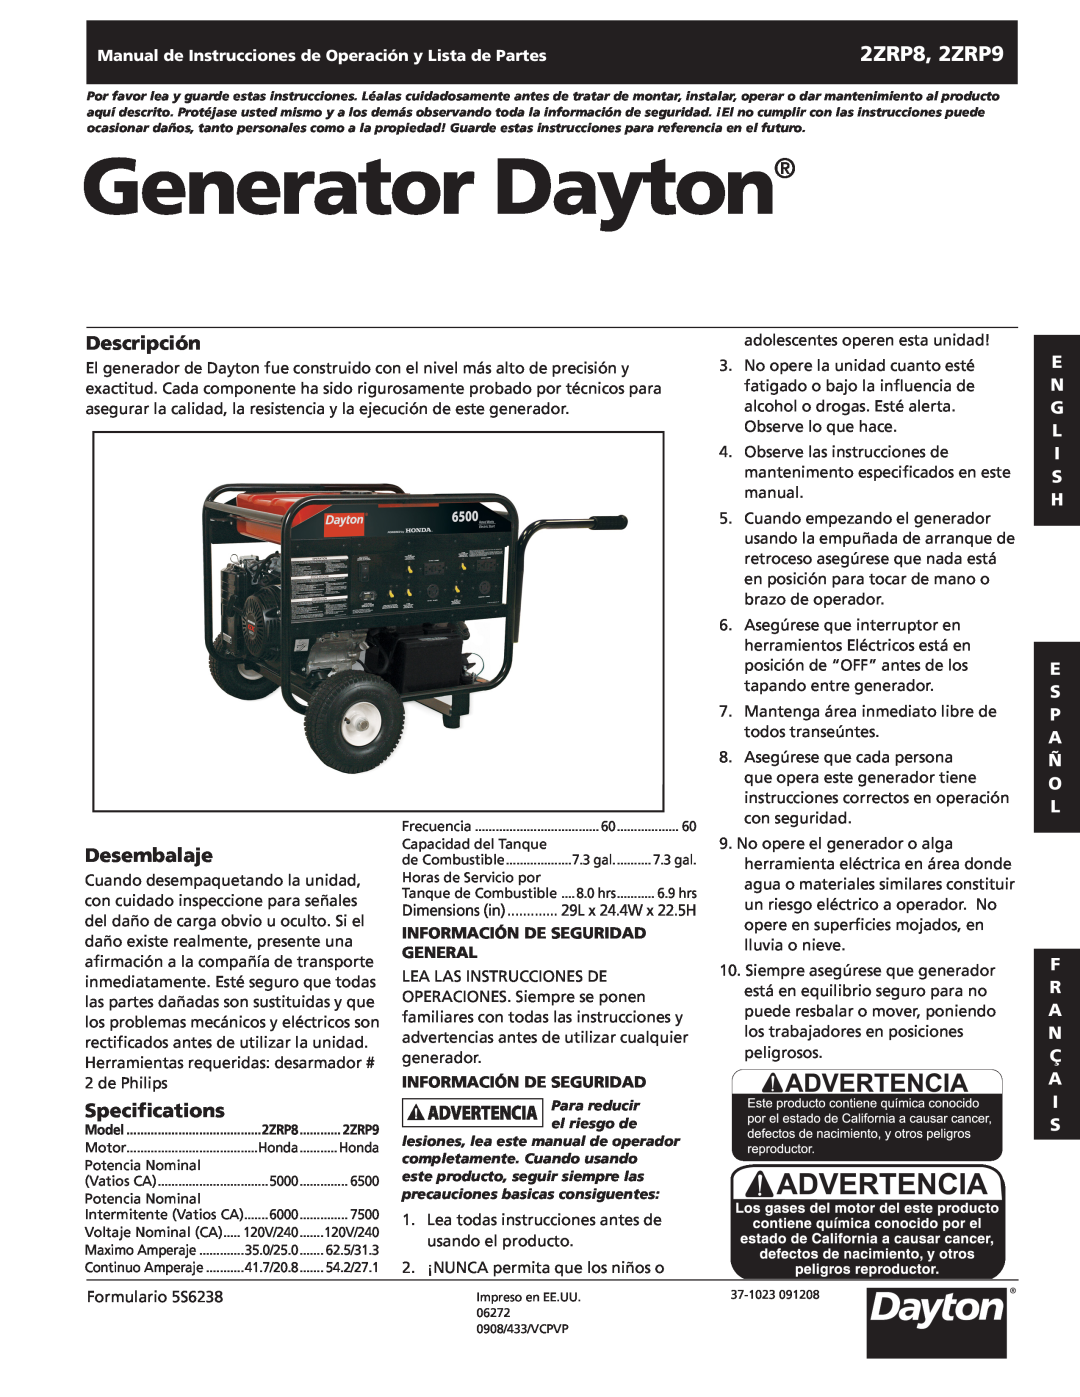 Dayton Generator Dayton, Descripción, Desembalaje, 2ZRP8, 2ZRP9, Specifications, Información de Seguridad, General 